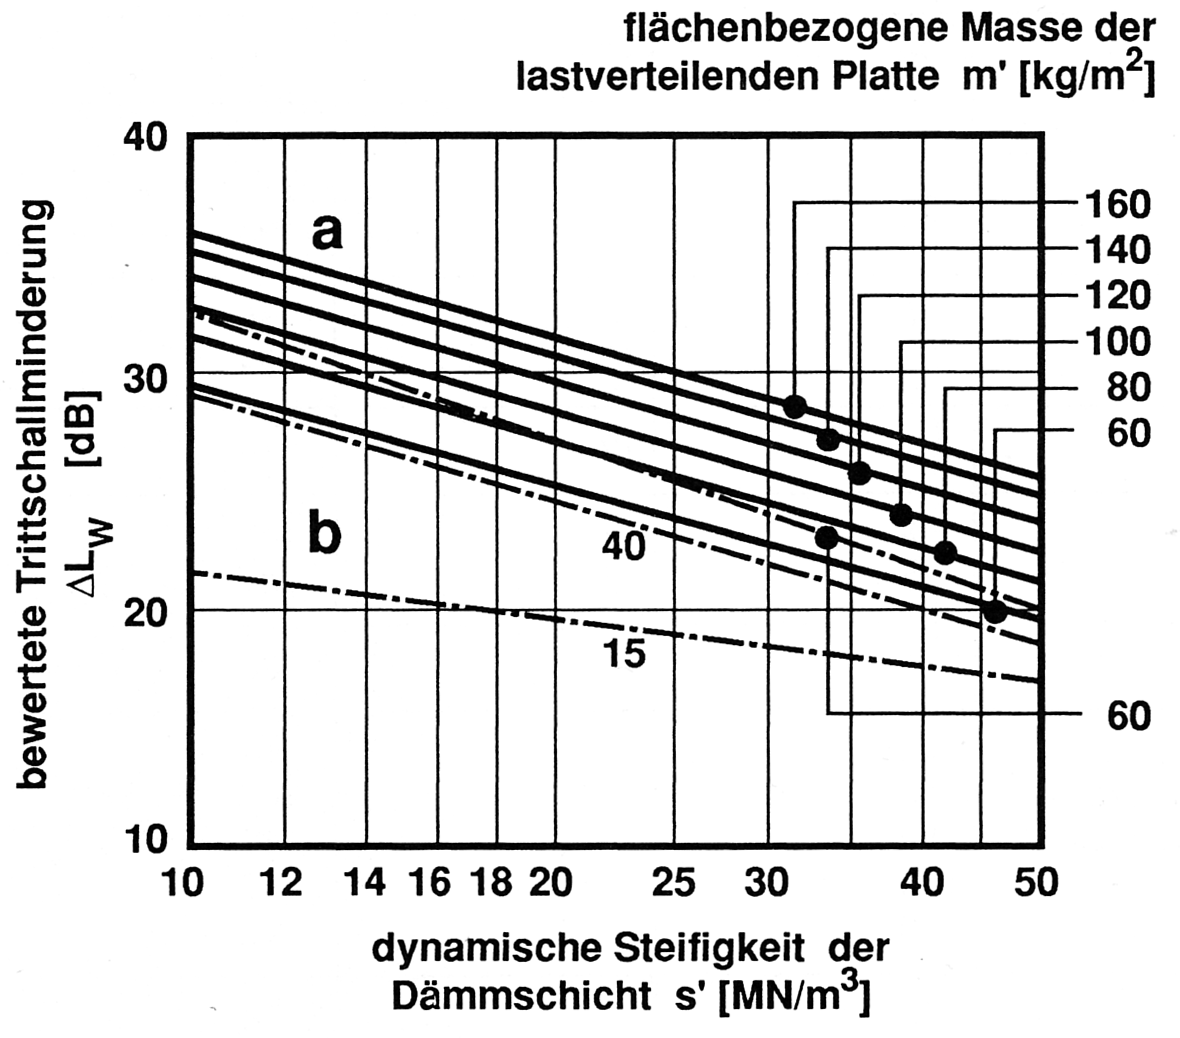 Abbildung 4.3.3: Bewertete Trittschallminderung ΔLW von schwimmenden Estrichen in Abhängigkeit von der flächenbezogenen Masse der lastverteilenden Platte und der dynamischen Steifigkeit der Dämmschicht darunter.(Fasold/Veres 2003, S.307)